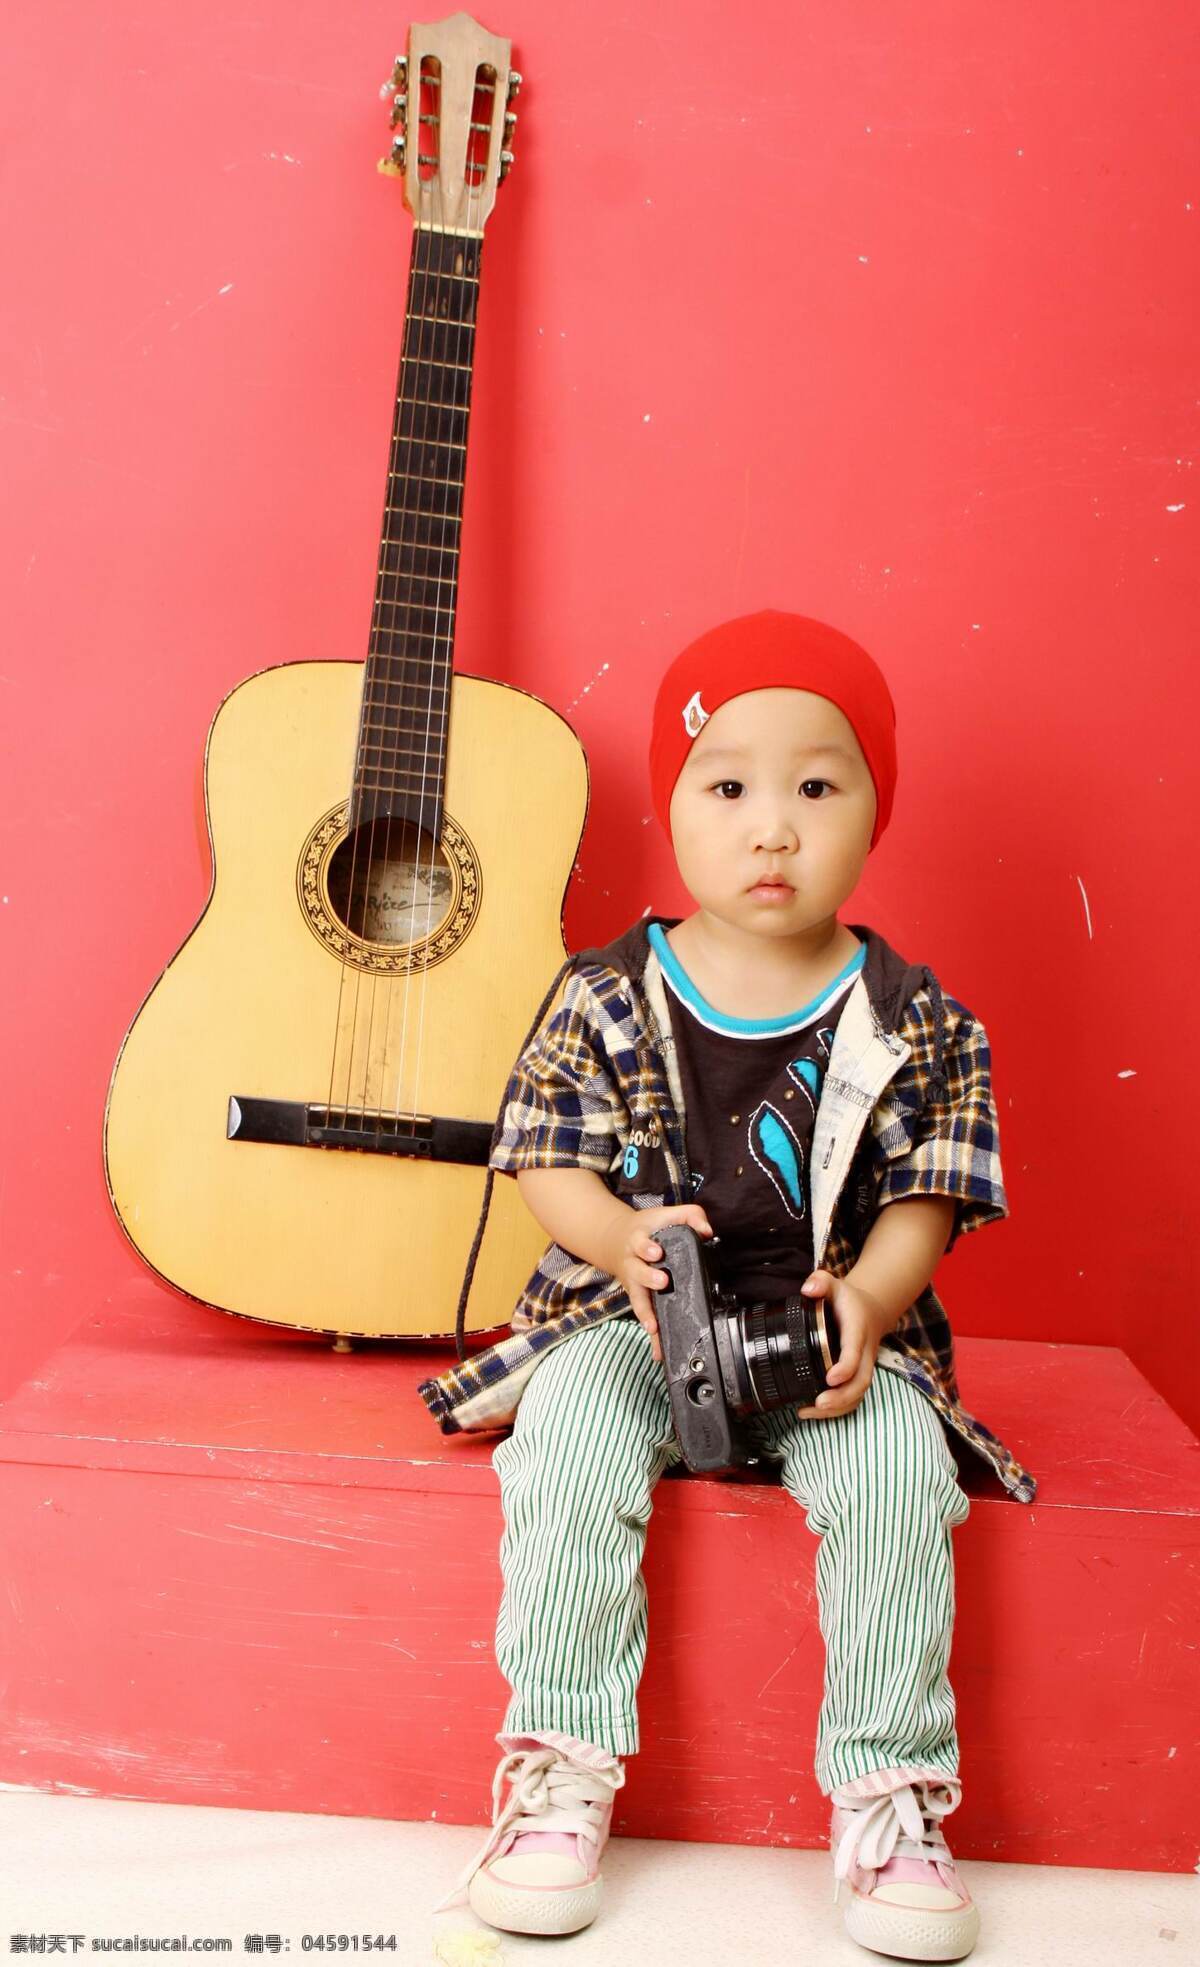 韩 版 酷 男孩 儿童幼儿 人物图库 韩版酷男孩 吉他 相机 宝宝 帅气男孩 psd源文件